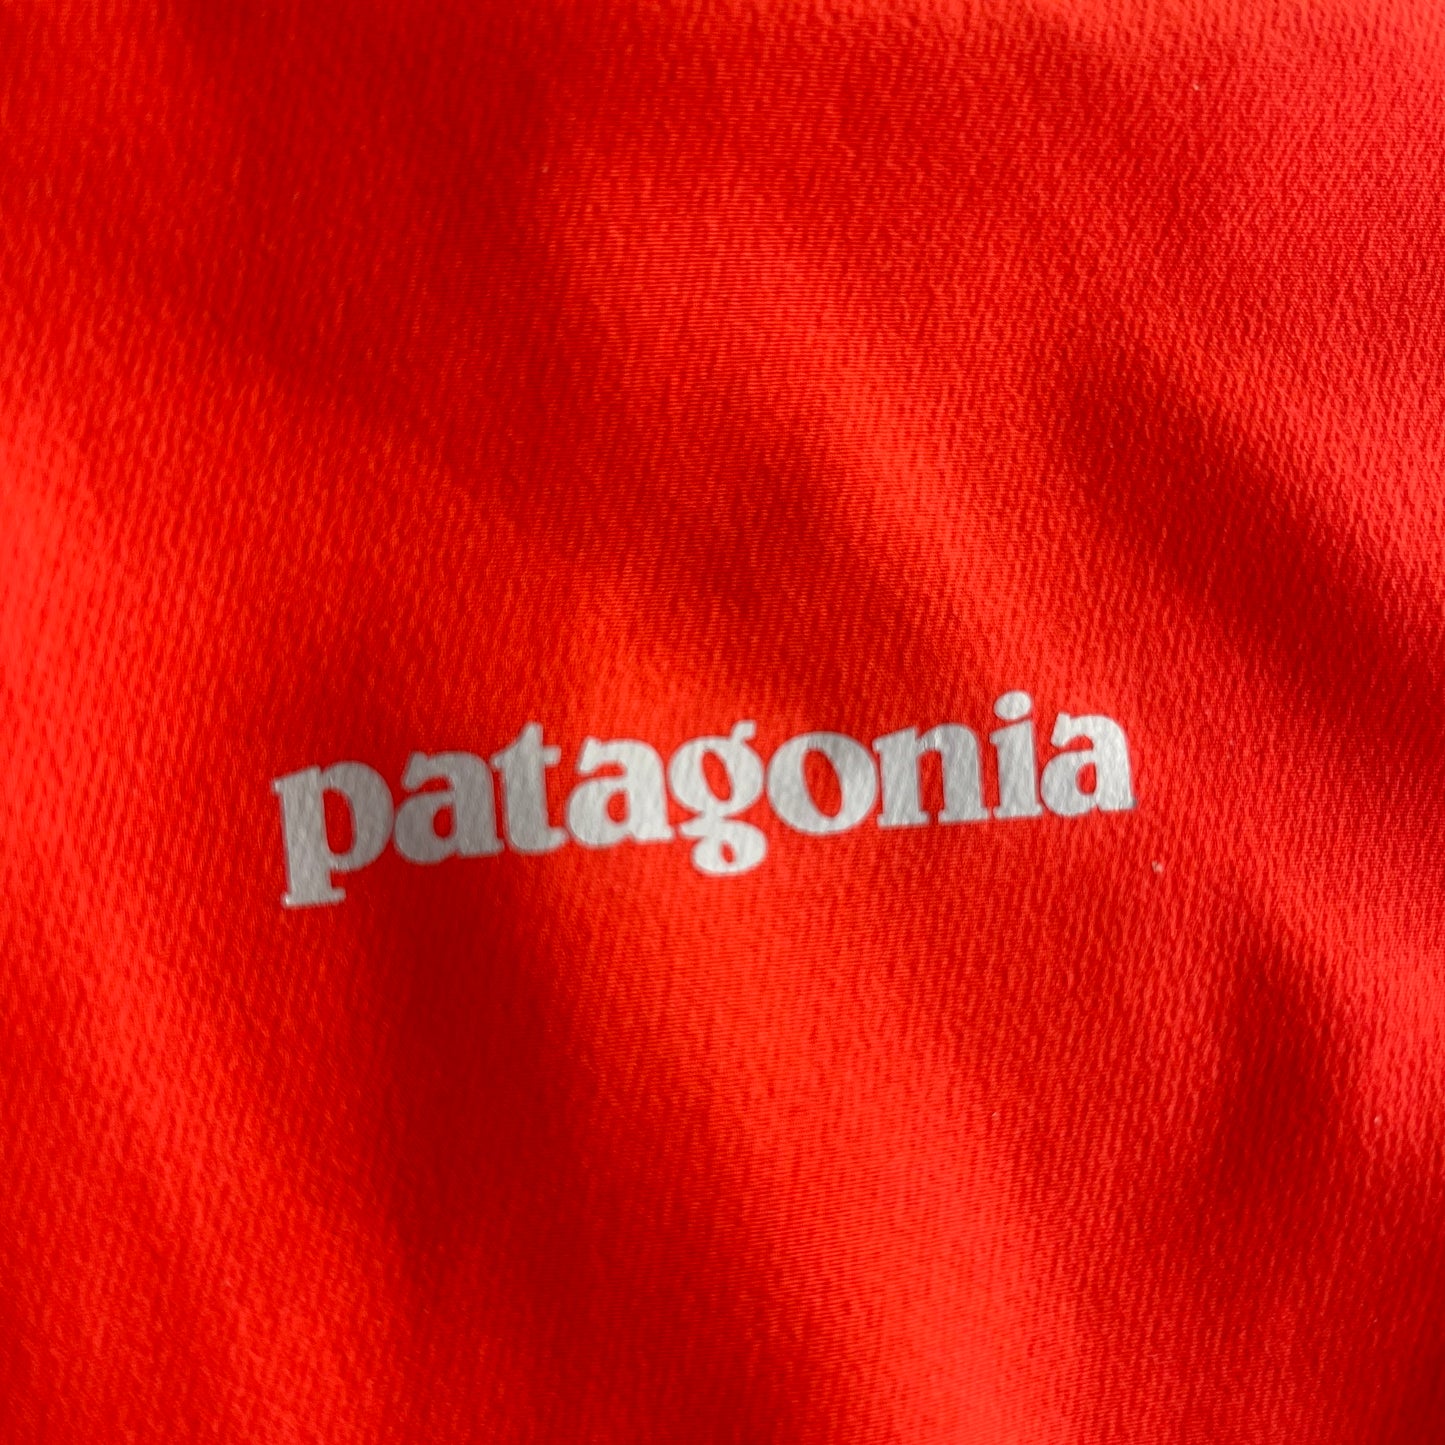 Jacke von Patagonia Damen S neon orange